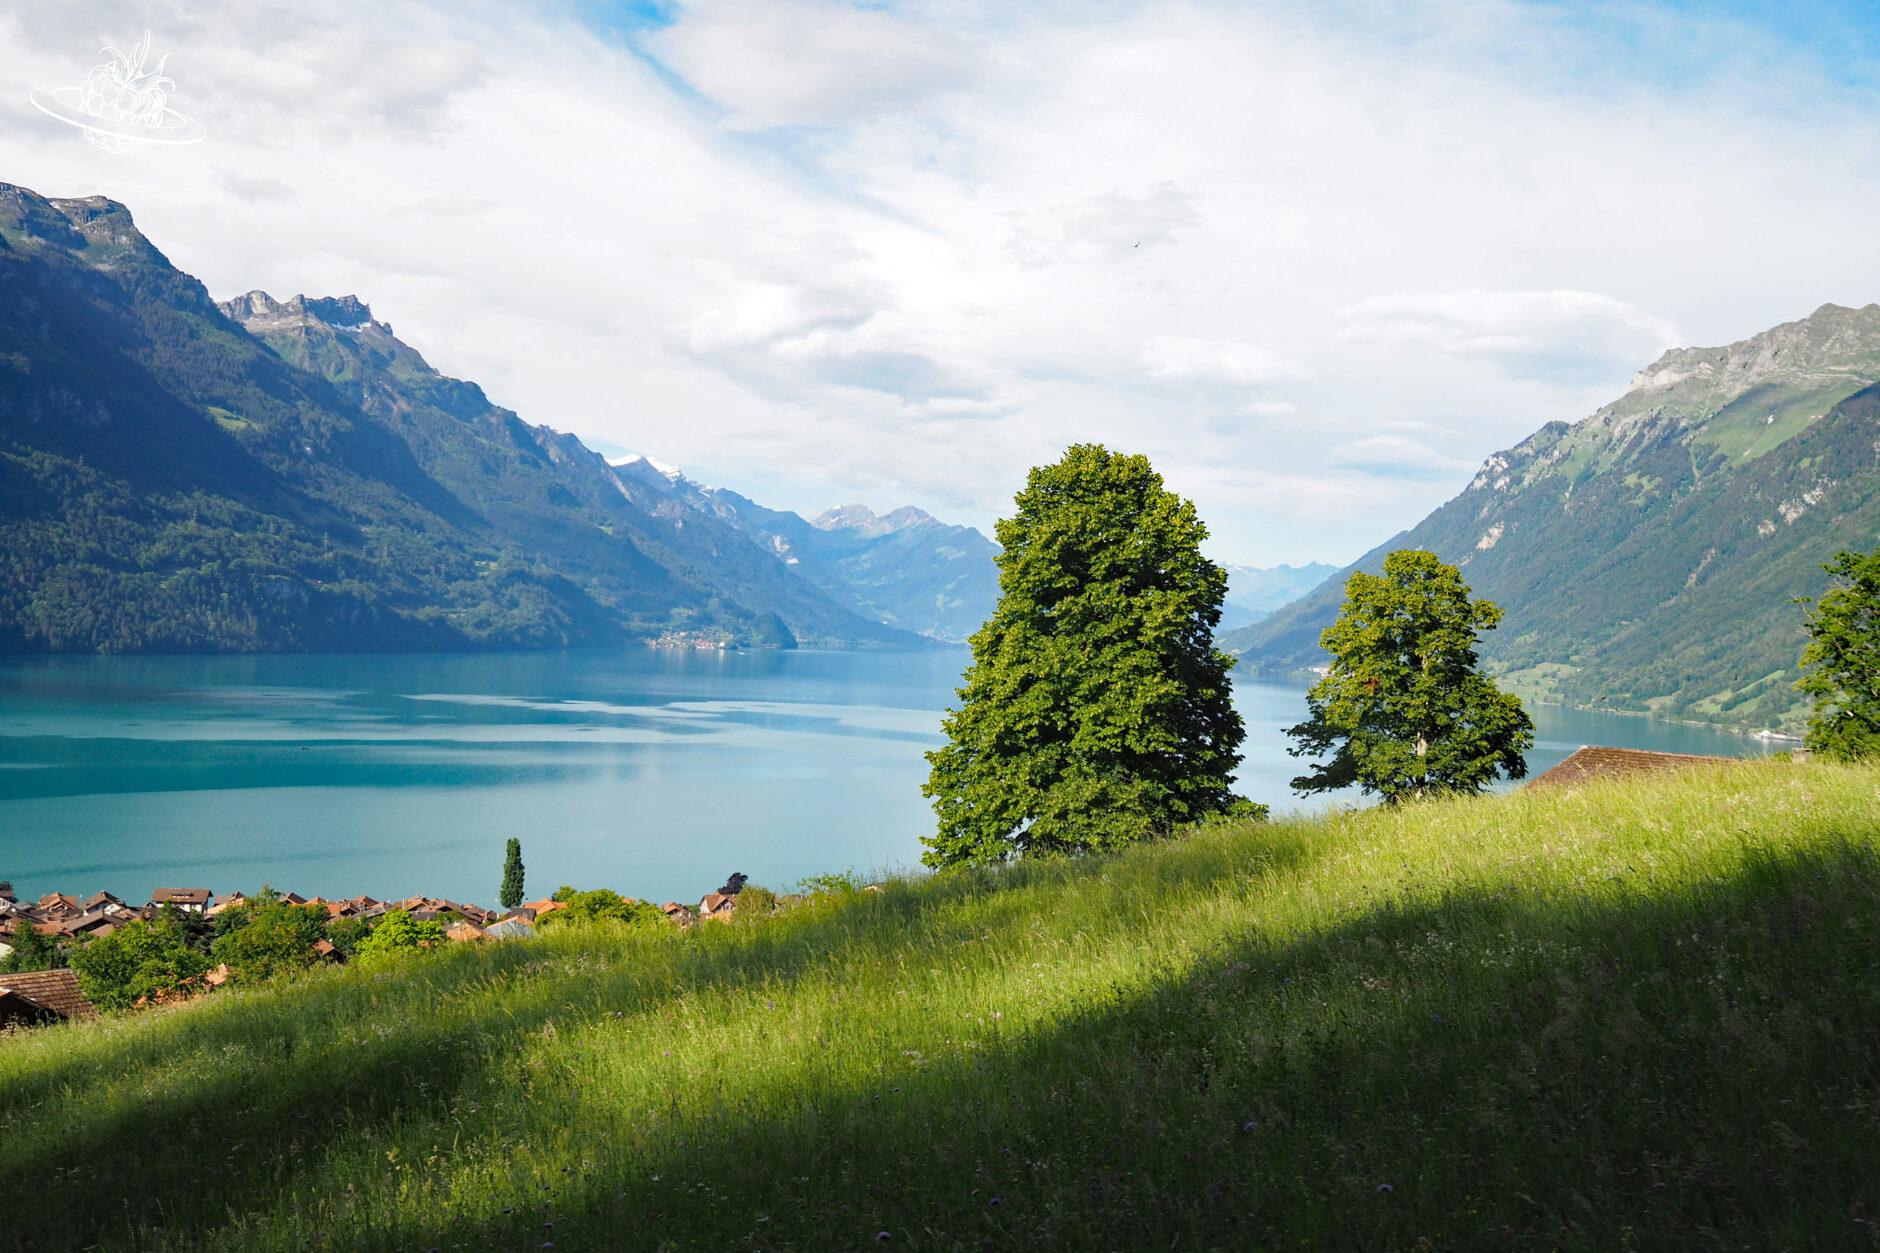 Idyllisches Bild, welches typisch Schweiz darstellt